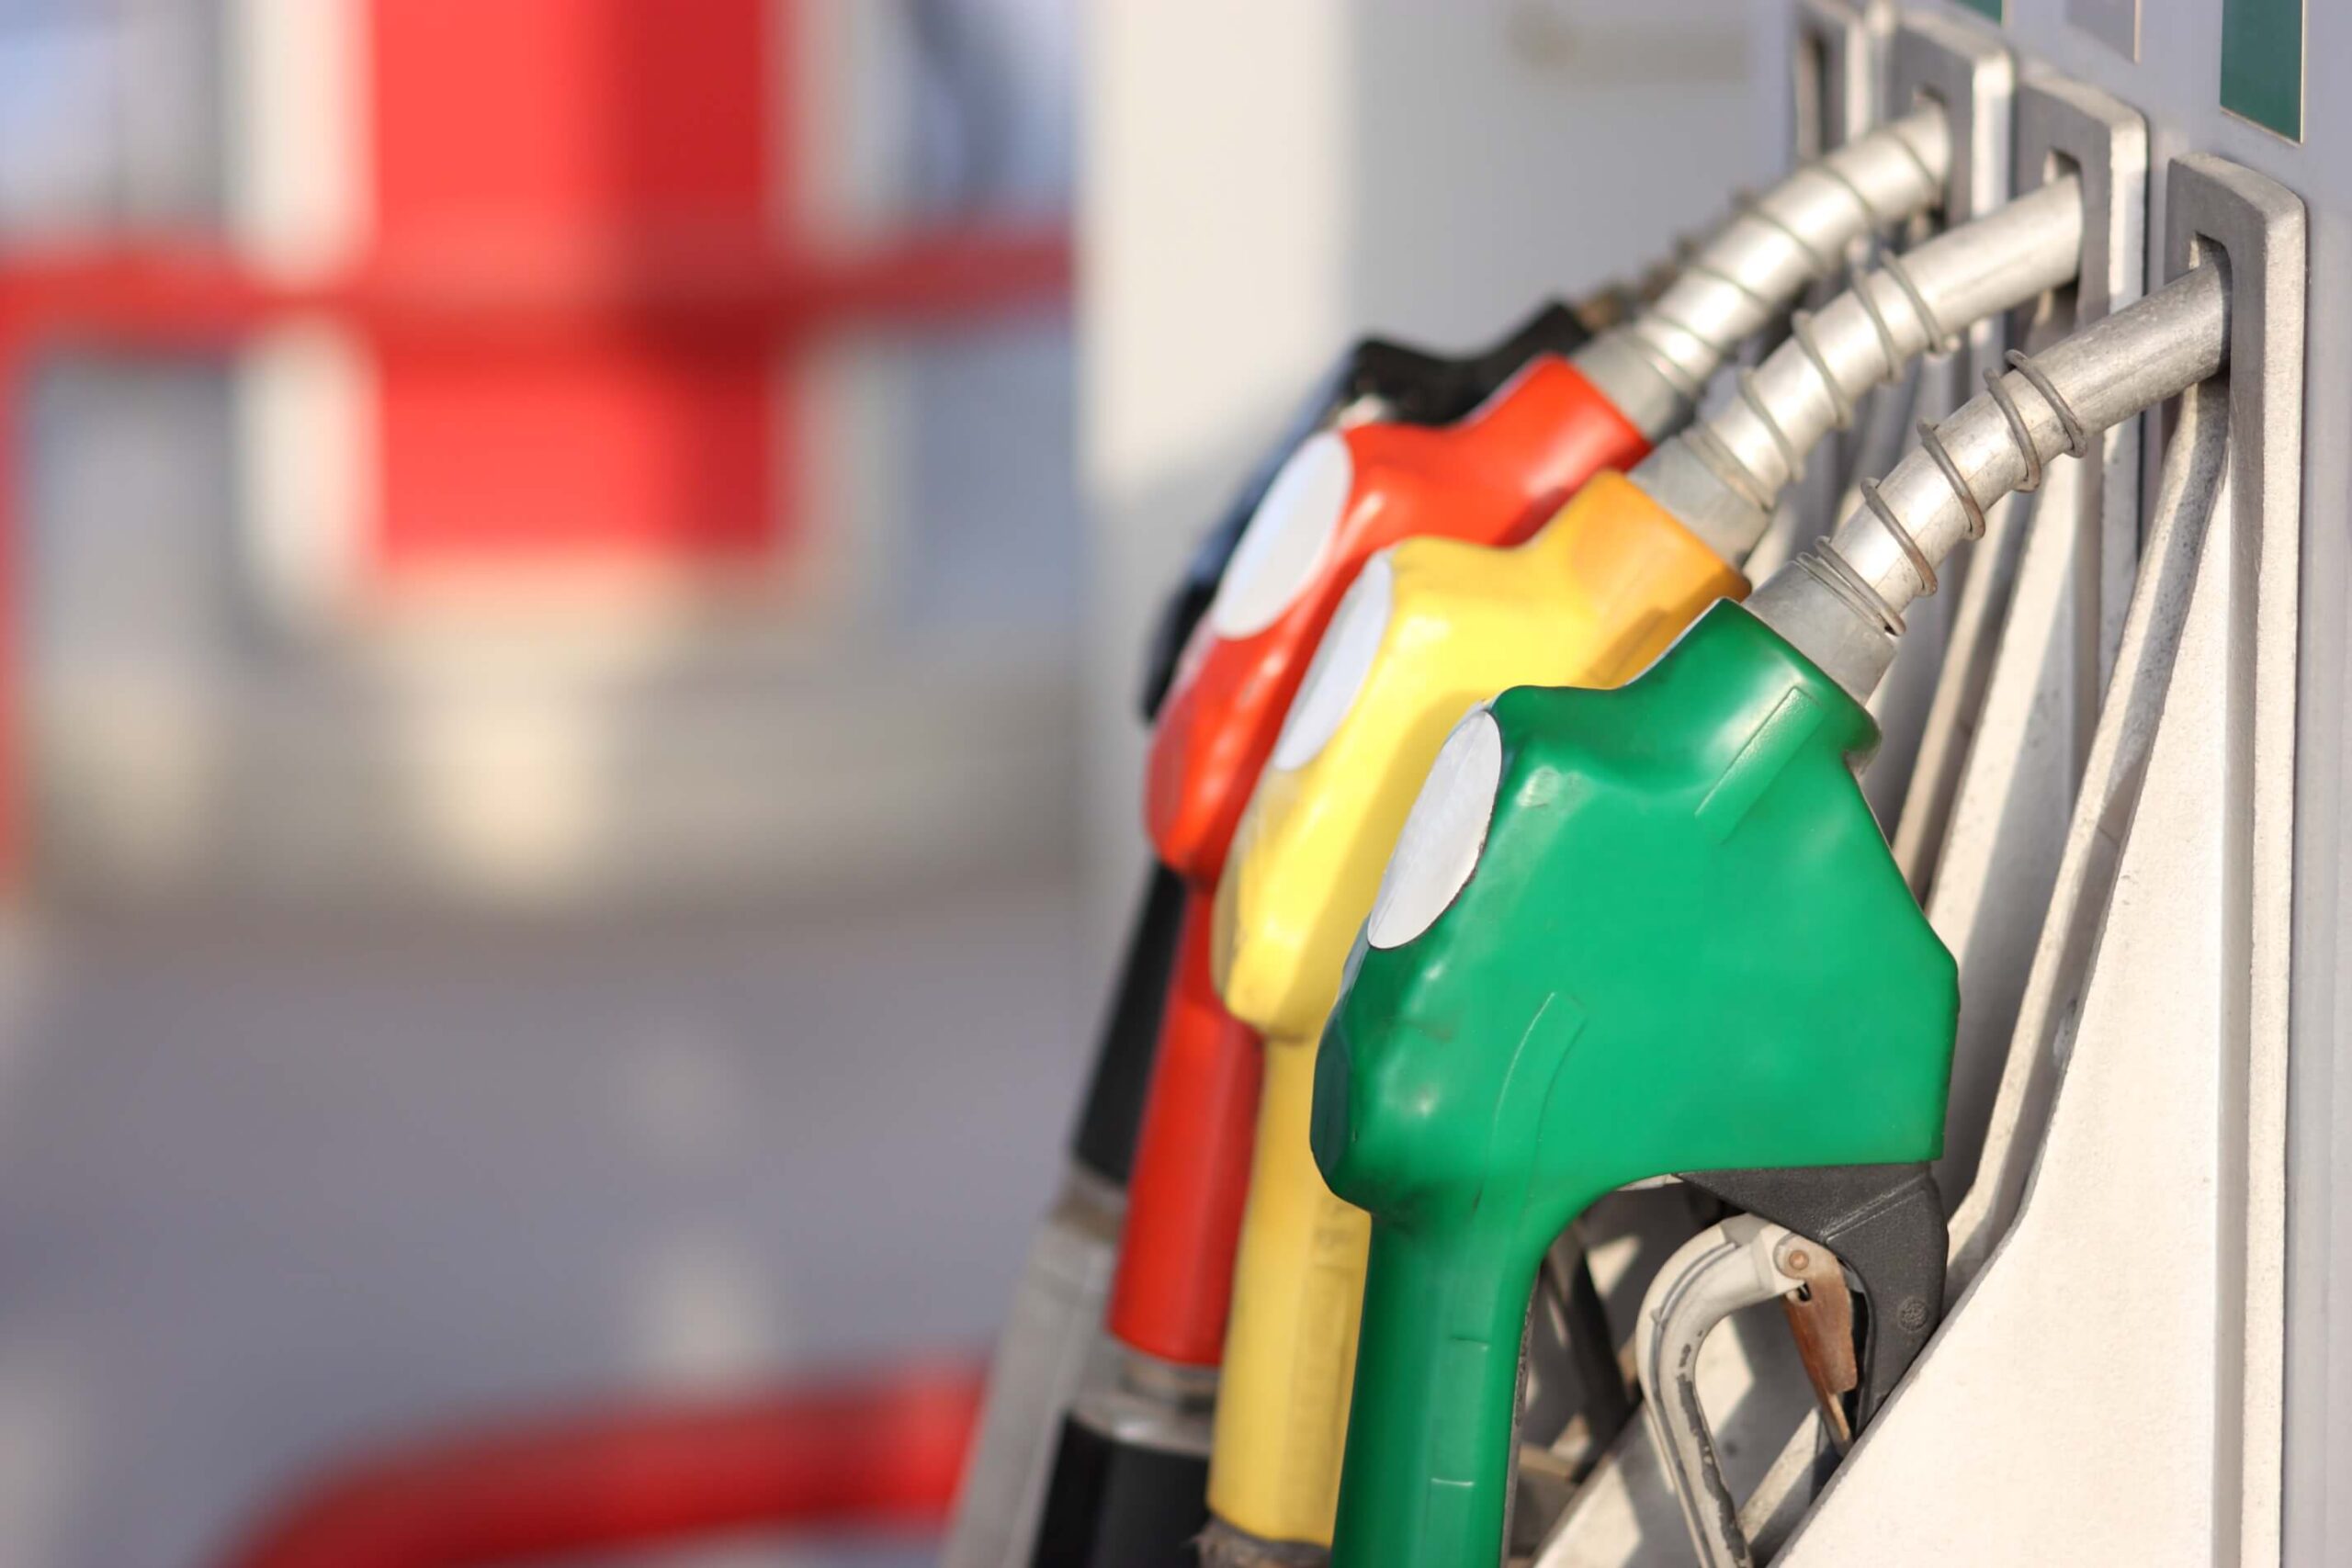 Combustíveis: Gasóleo vendido 4,9 cêntimos acima do Preço Eficiente. Gasolina 95 esteve 4,7 cêntimos mais cara